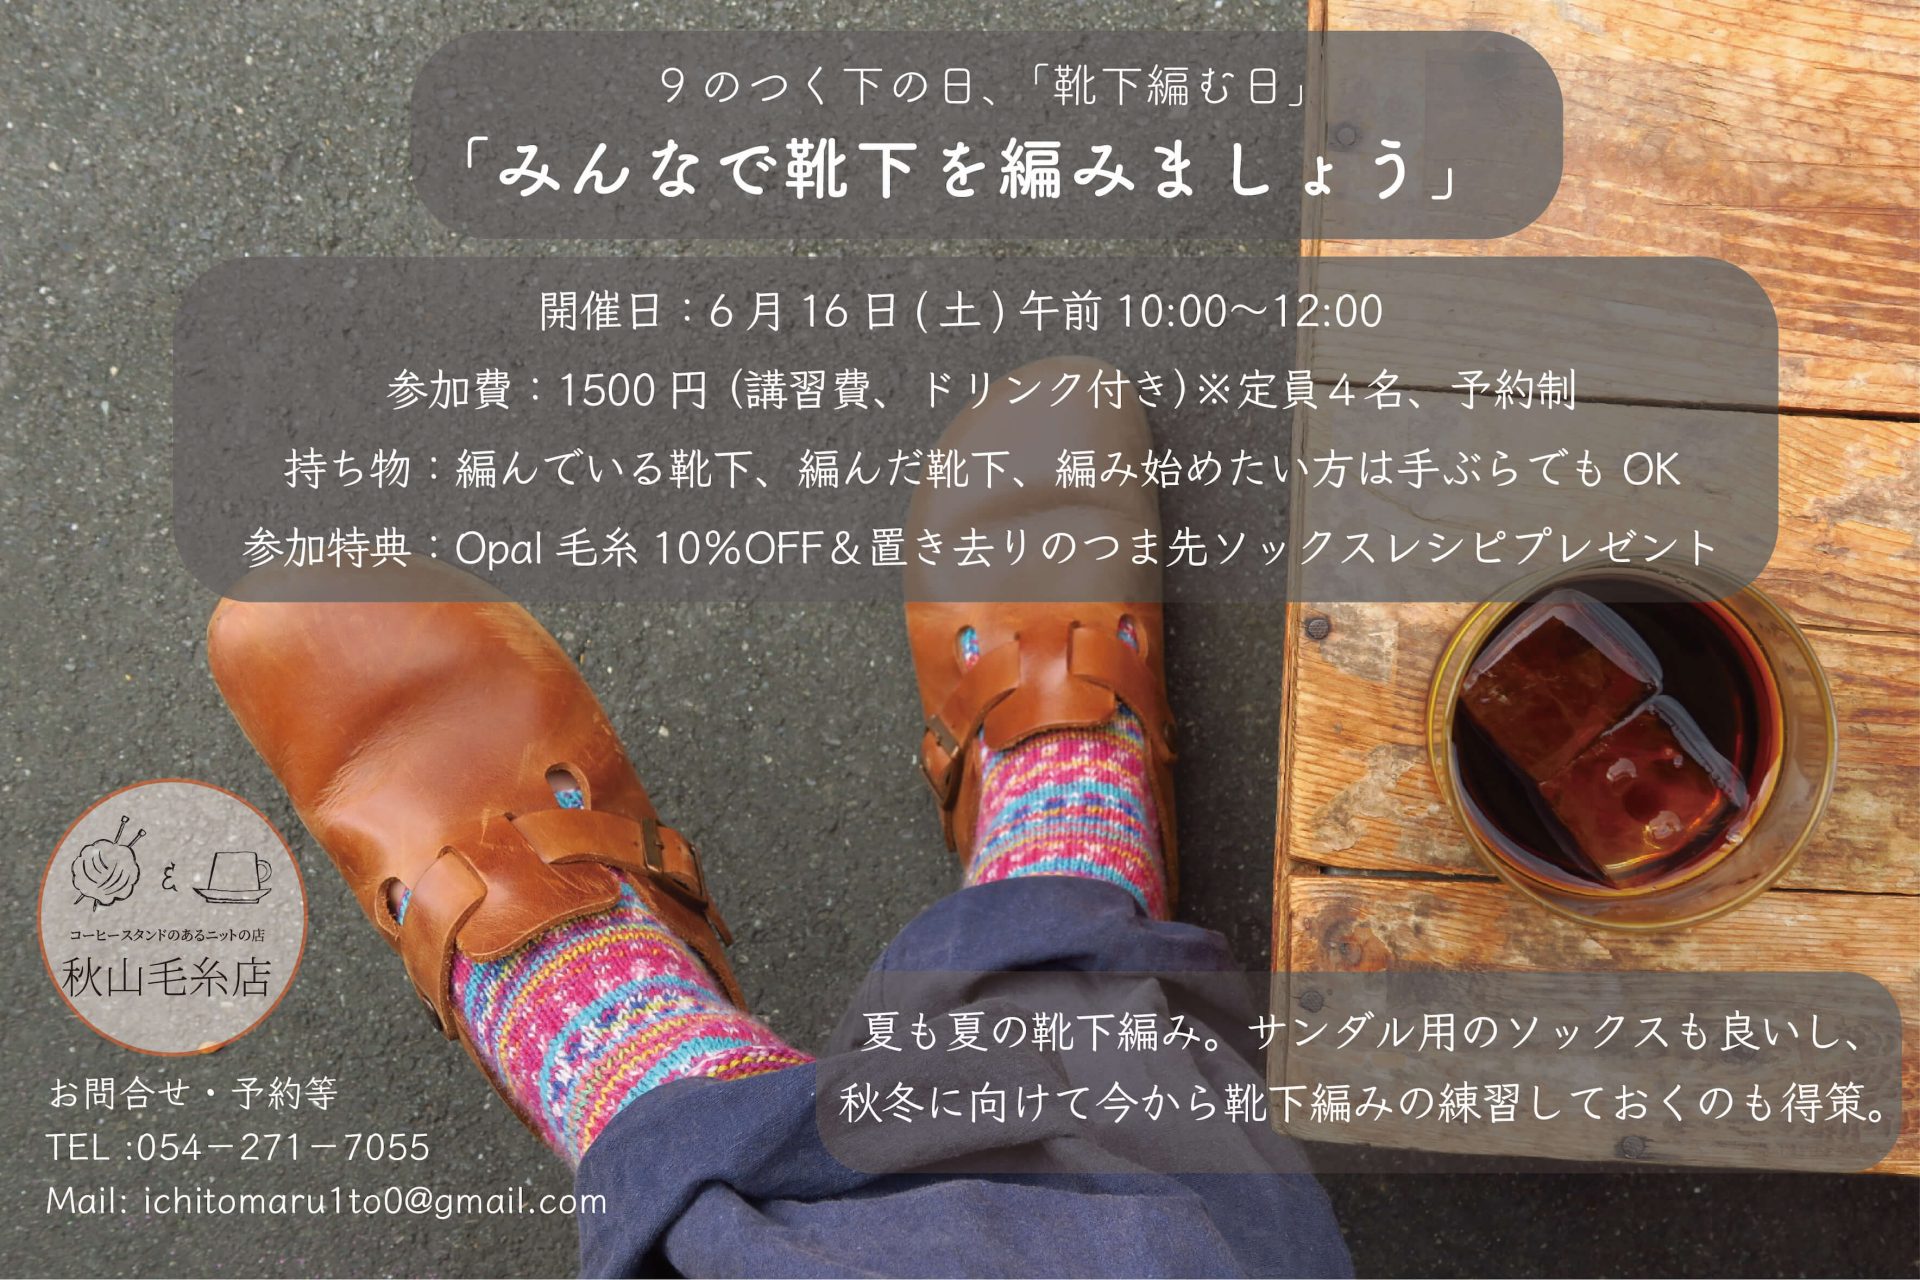 [イベント終了]7月16日、30日は「靴下編みましょうの会」と「編み物談義」